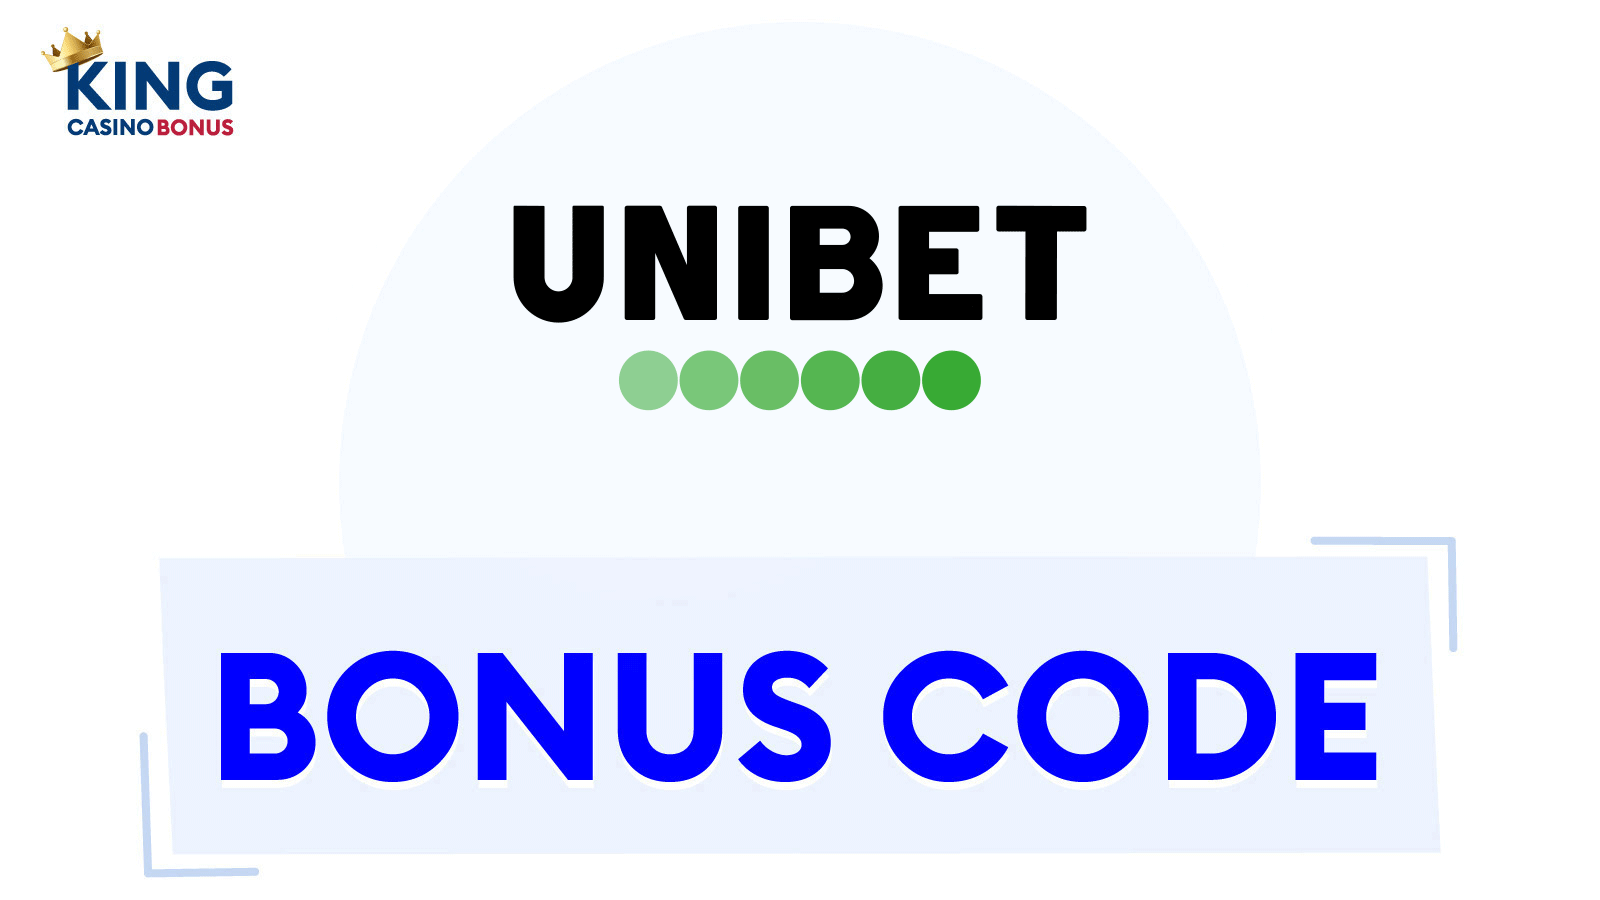 Unibet Casino Bonuses